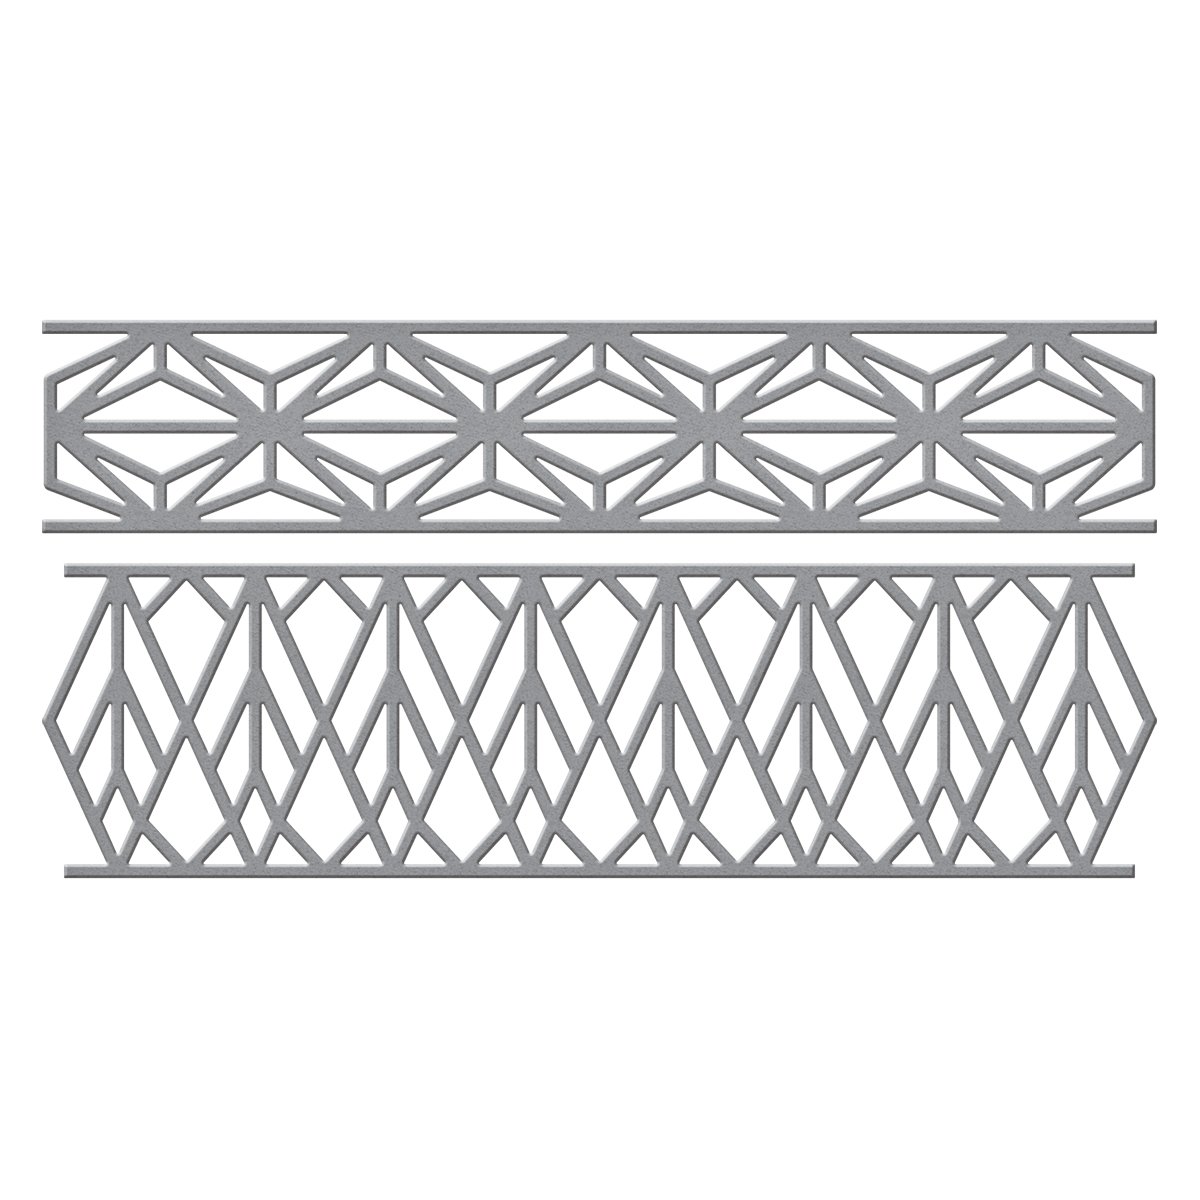 Spellbinders Grenzen Shapeabilities Stanzform mit Rhombus-Rändern, Metall, braun, 19.6 x 12.4 x 0.2 cm